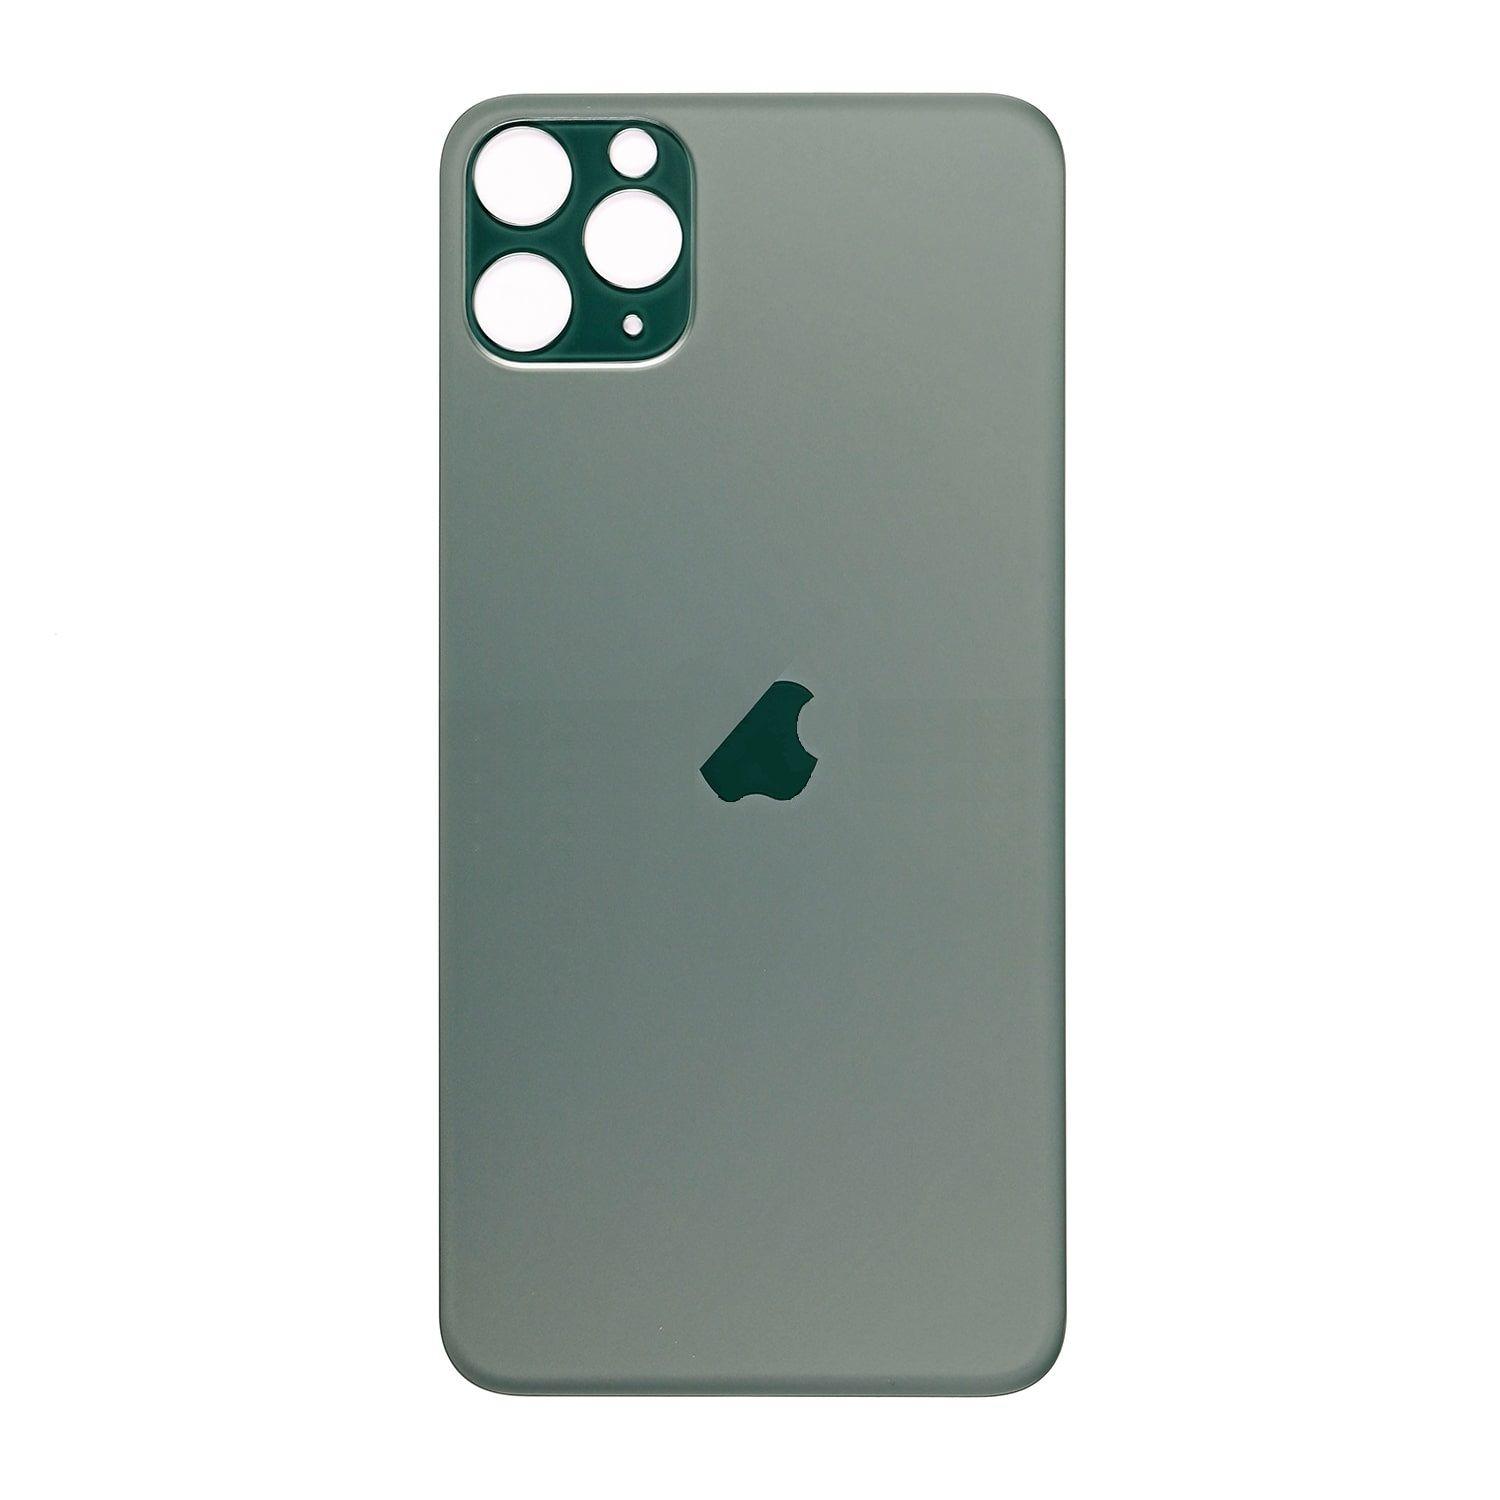 Klapka Iphone 11 pro zielona bez szkiełka aparatu